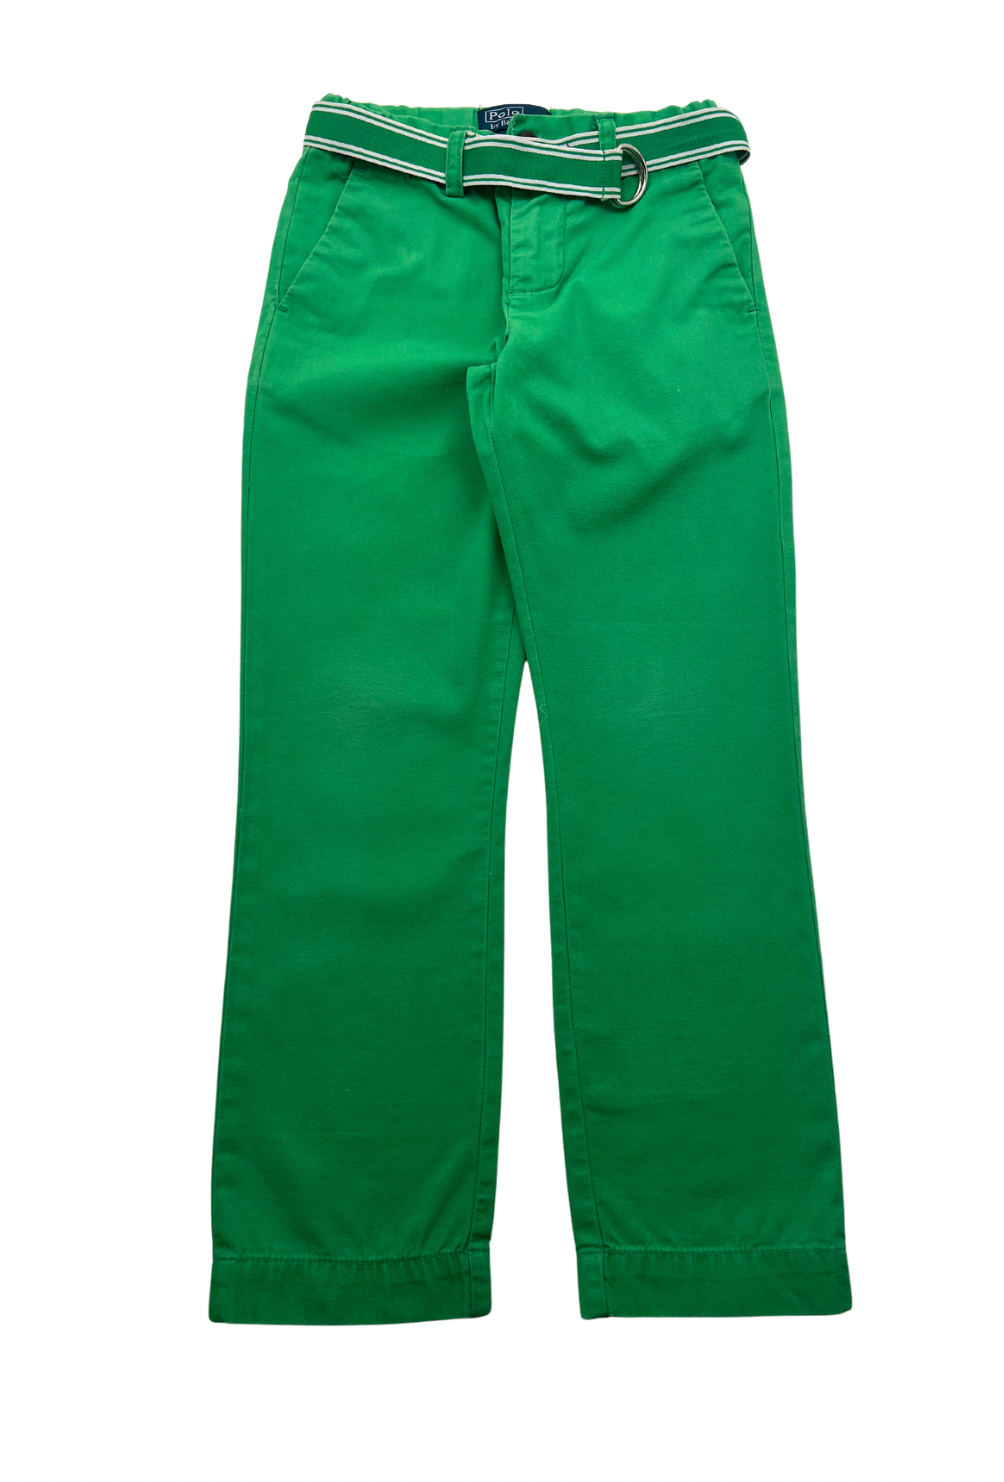 RALPH LAUREN - Pantalon vert - 5 ans